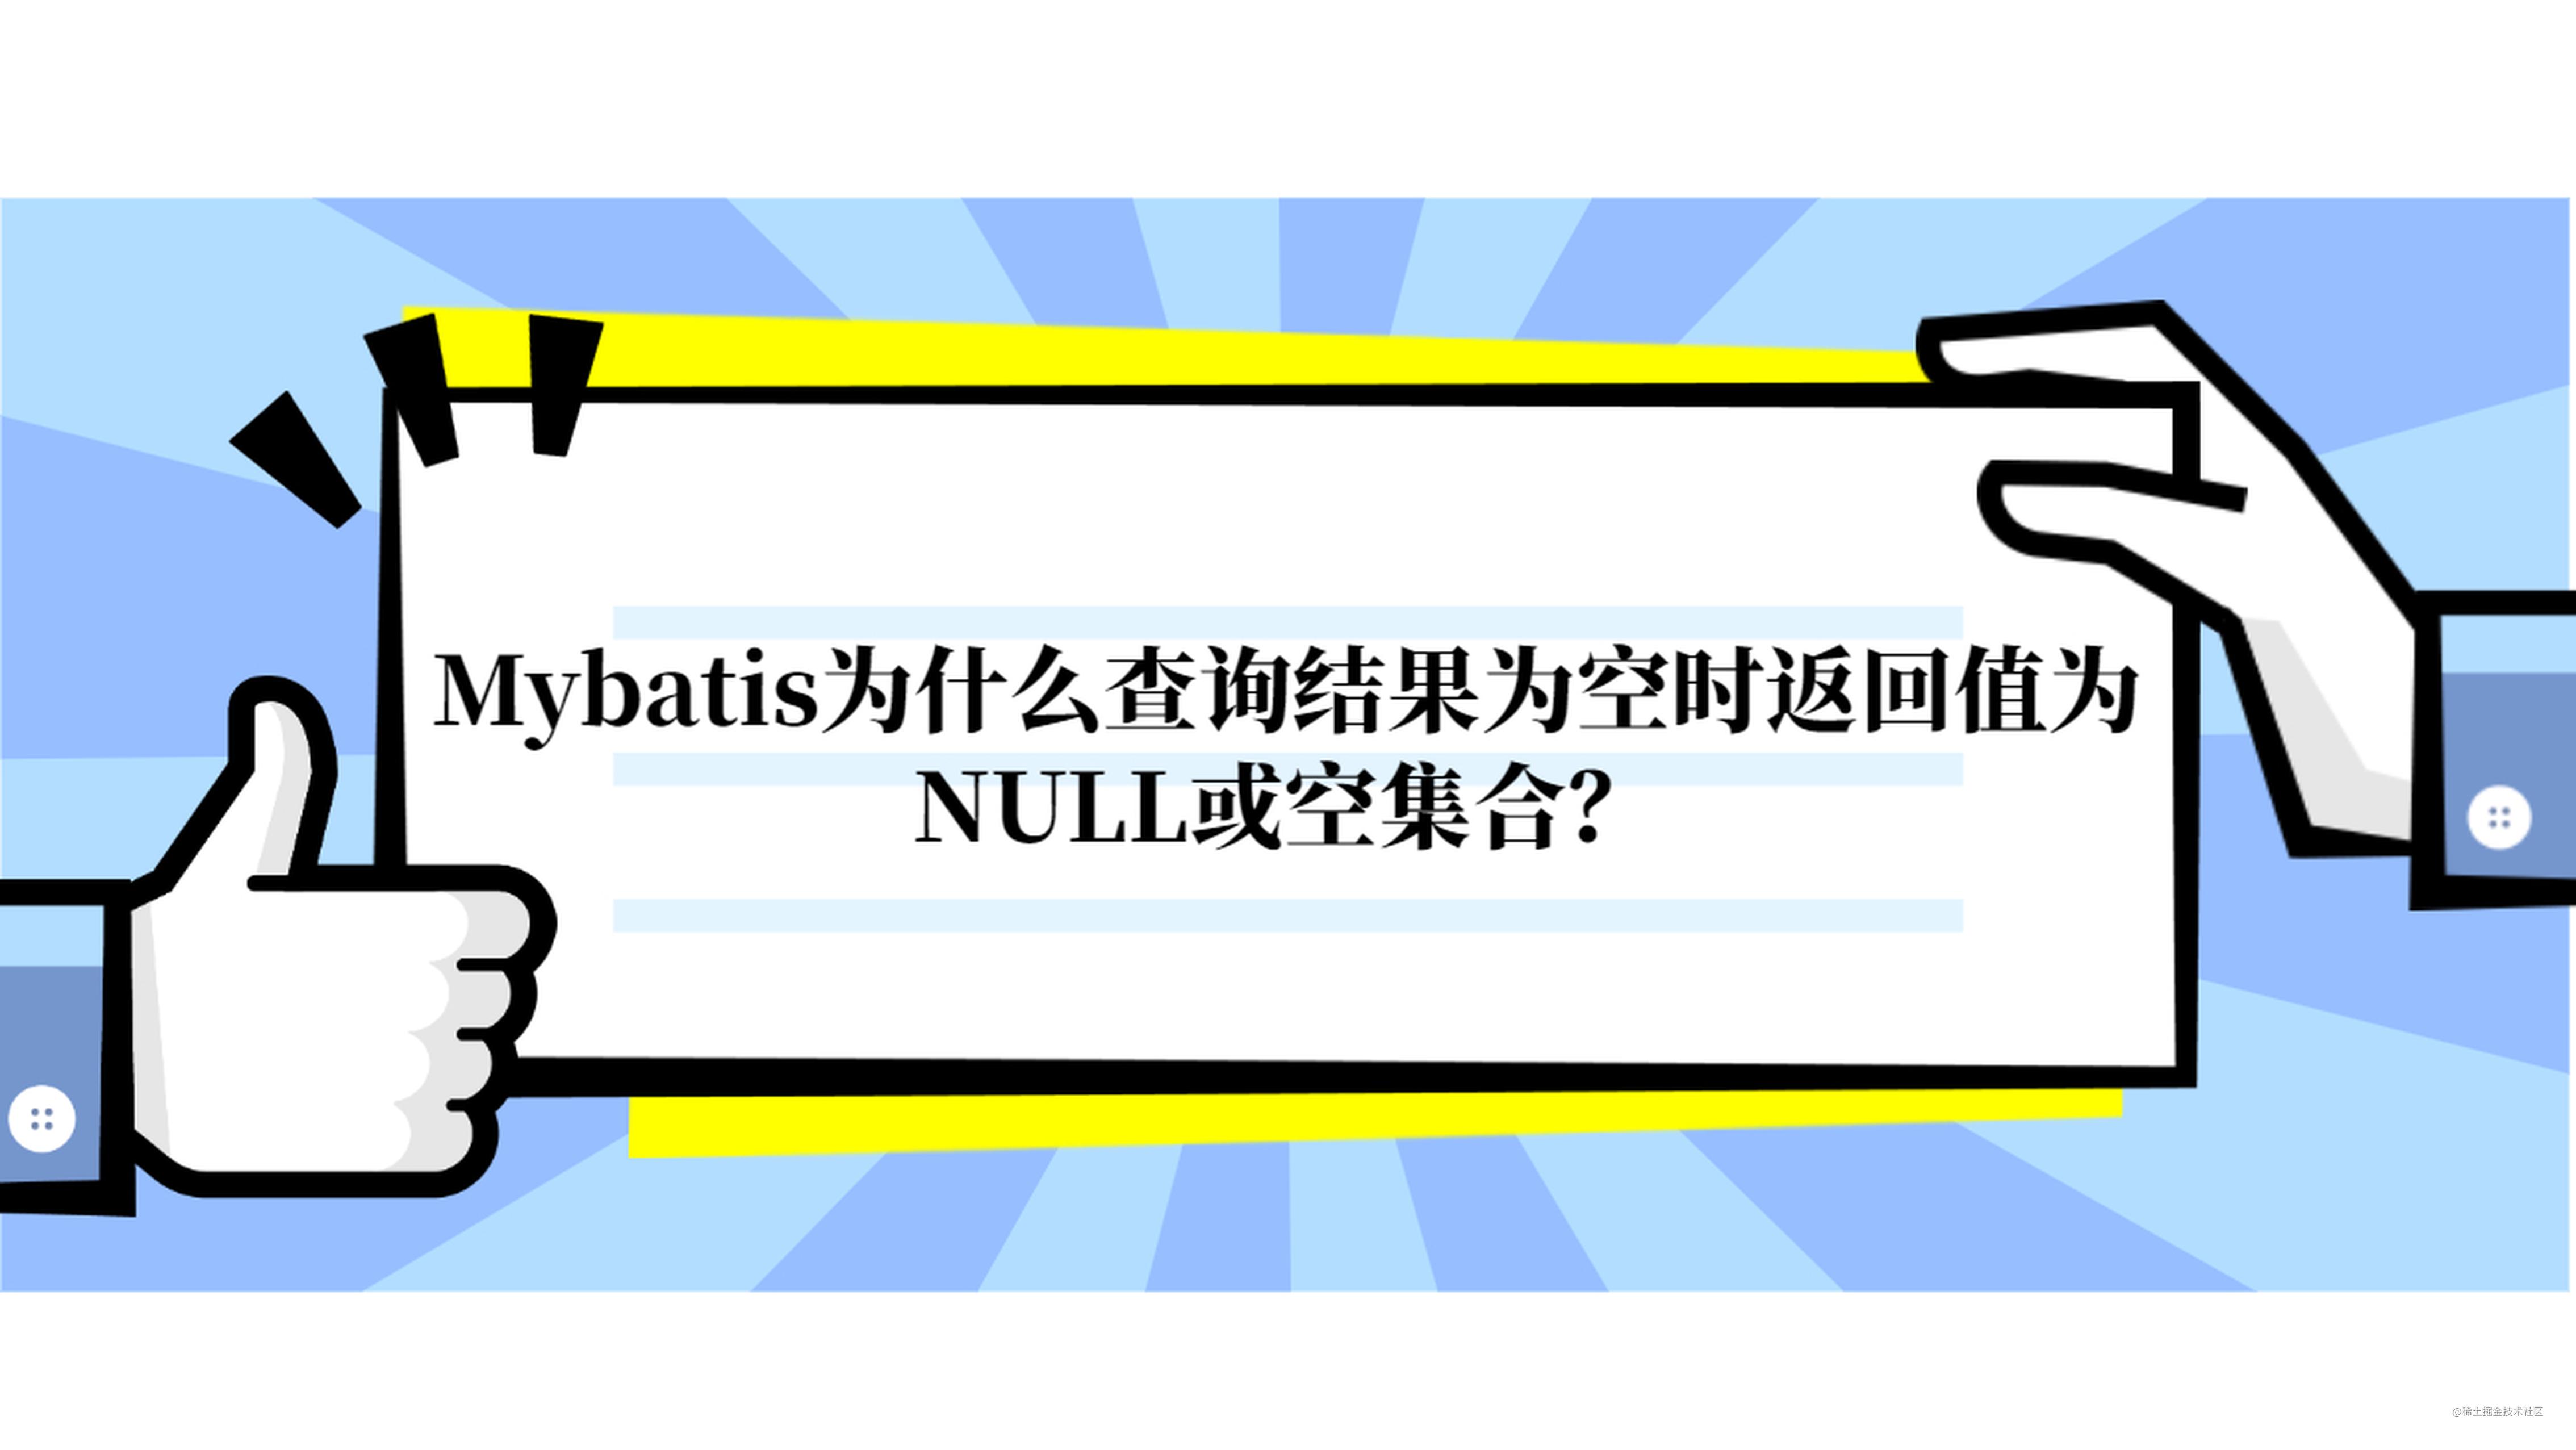 Mybatis为什么查询结果为空时返回值为NULL或空集合？